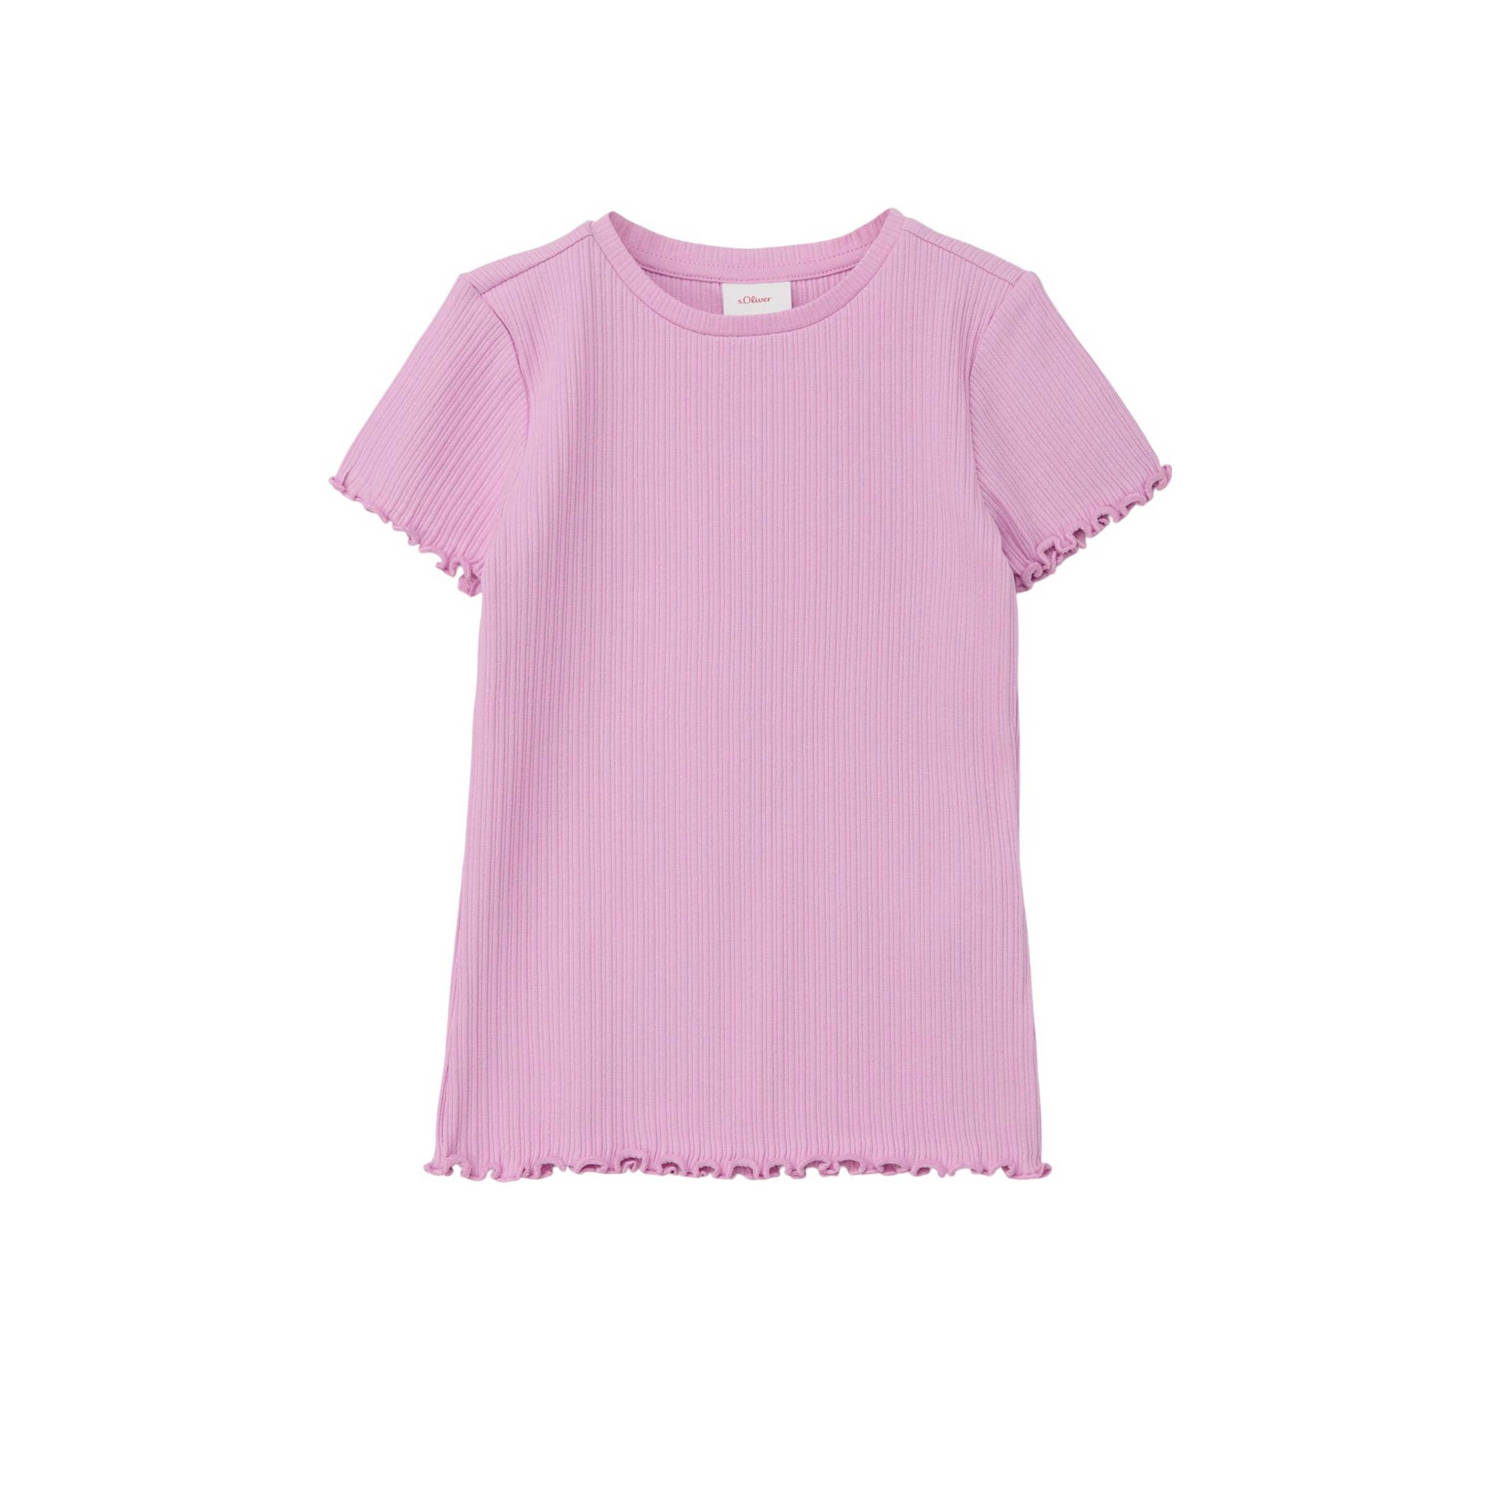 S.Oliver T-shirt roze Meisjes Stretchkatoen Ronde hals Effen 104 110